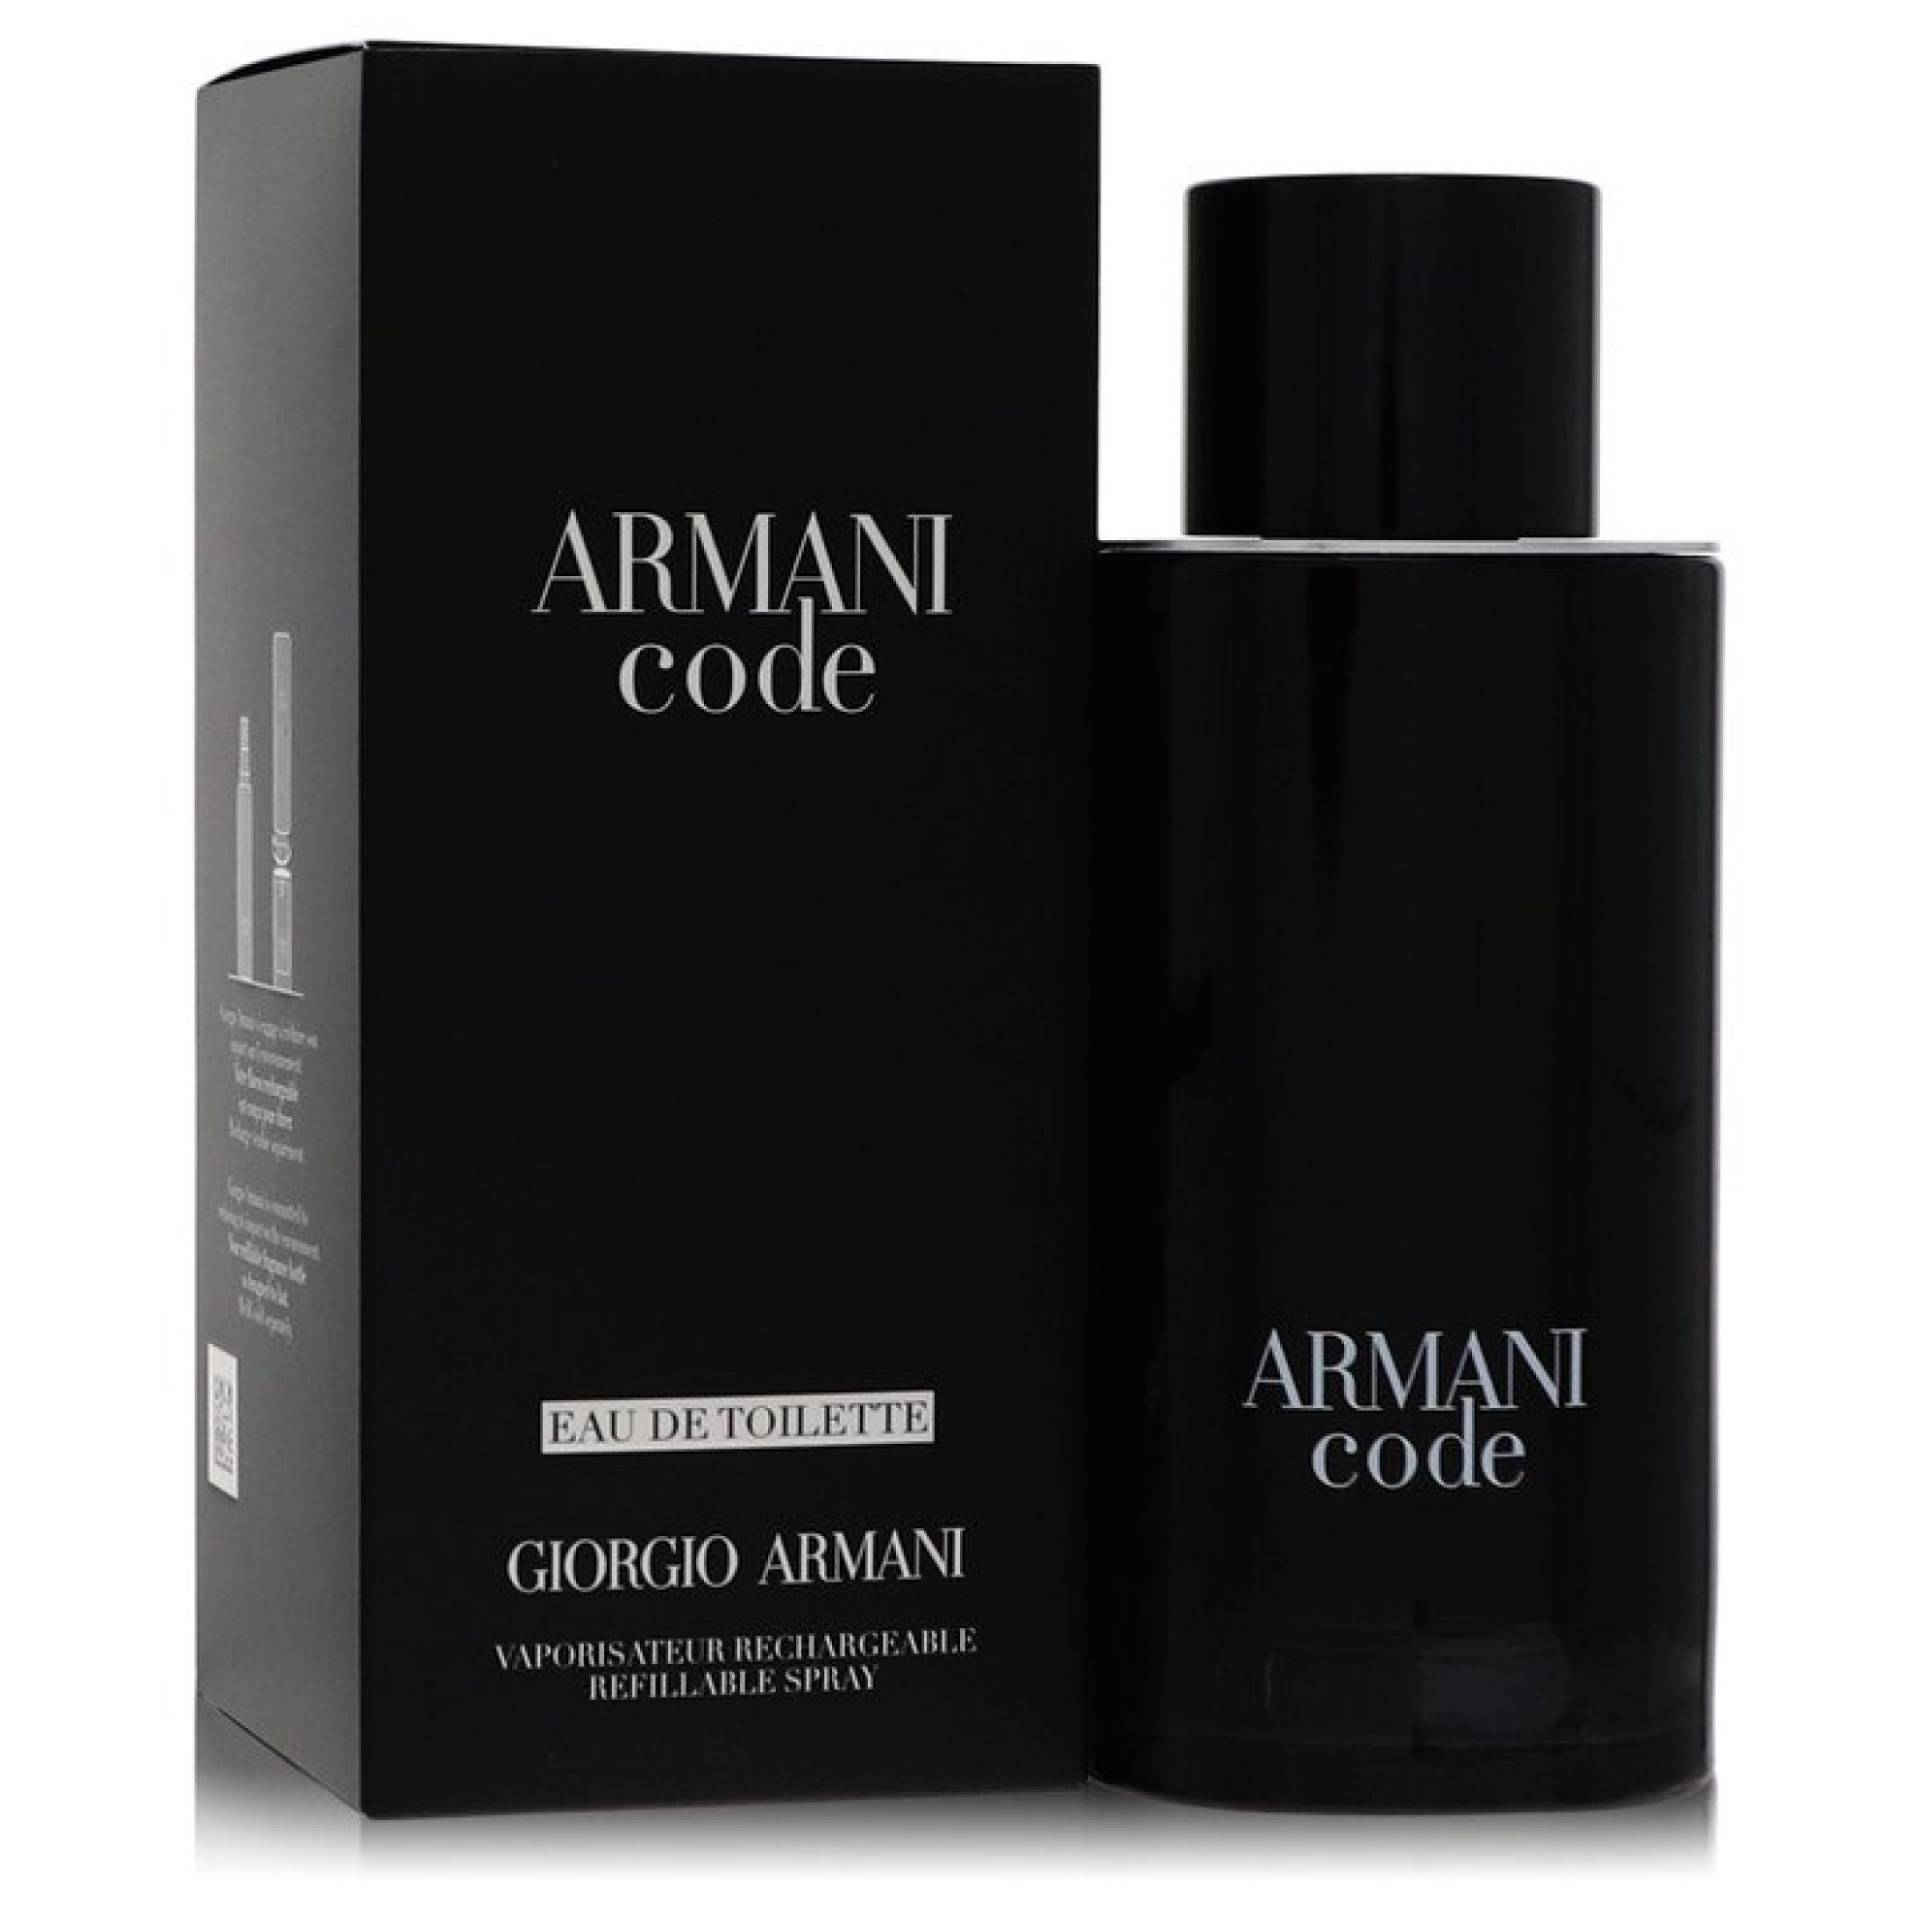 Giorgio Armani Armani Code Eau De Toilette Spray Refillable 125 ml von Giorgio Armani